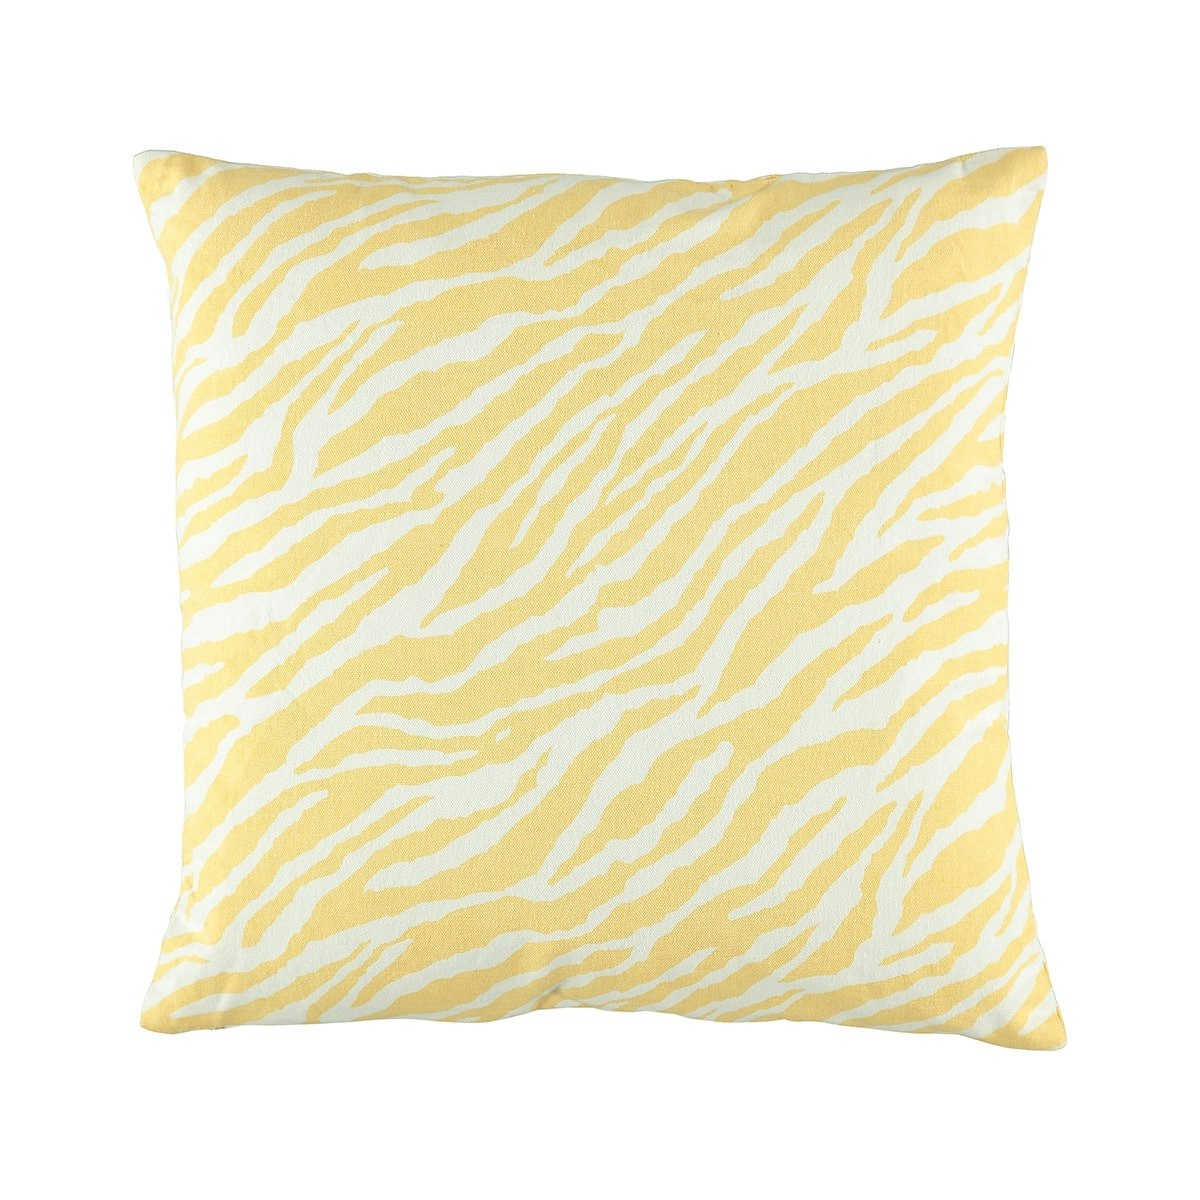 Animal canvas en vit och gul zebramönstrad prydnadskudde från Noble house.  - Roomoutlet.se - Textilier och inredning i Karlstad